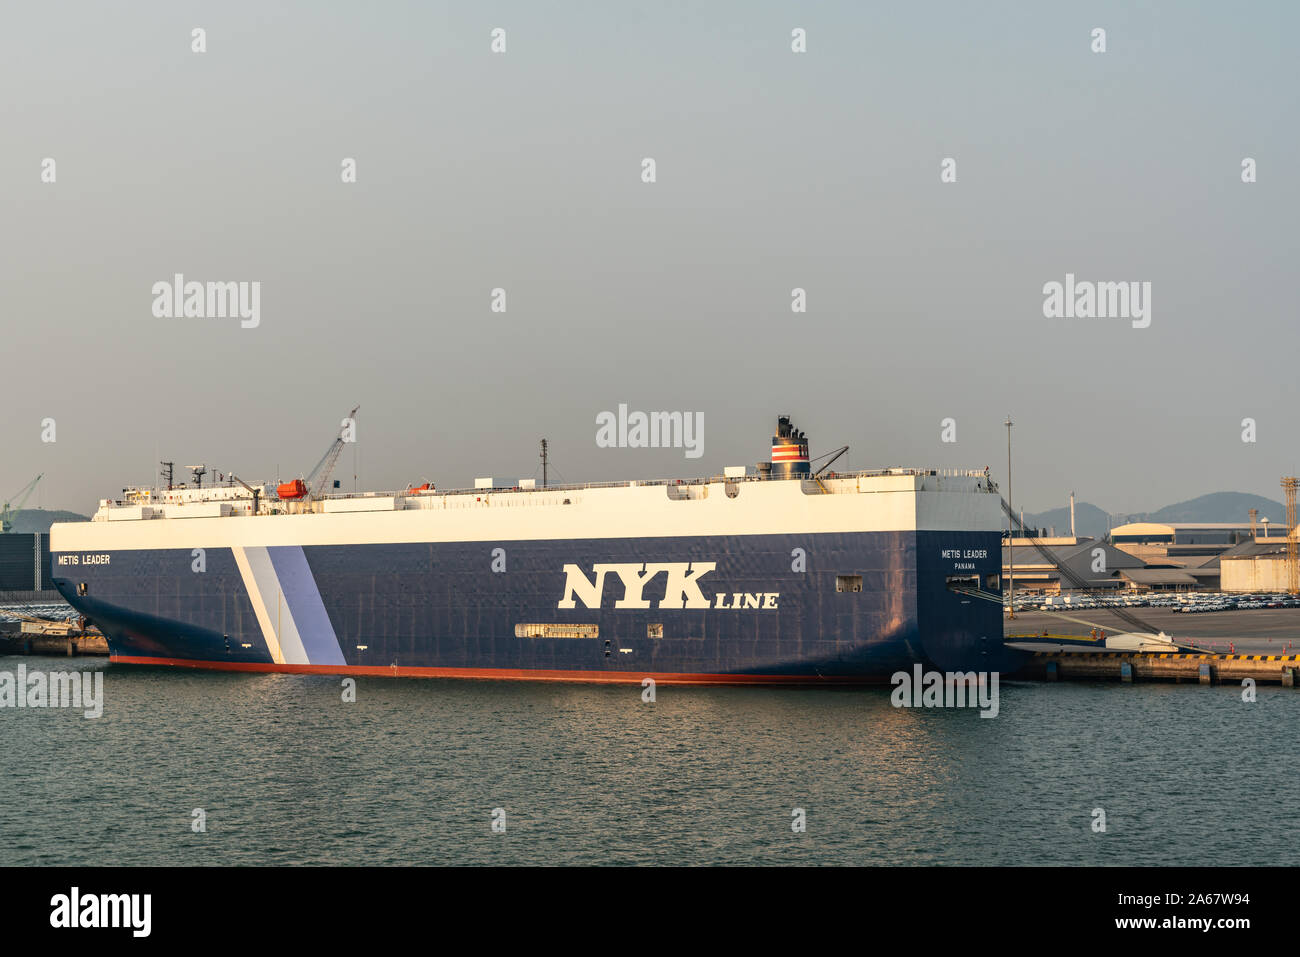 Port de Laem Chabang, Thaïlande - Mars 17, 2019 : Grand bleu-blanc NYKline véhicule transporteur, leader métis, a signalé au Panama, amarré sous lumière uv bleu Banque D'Images